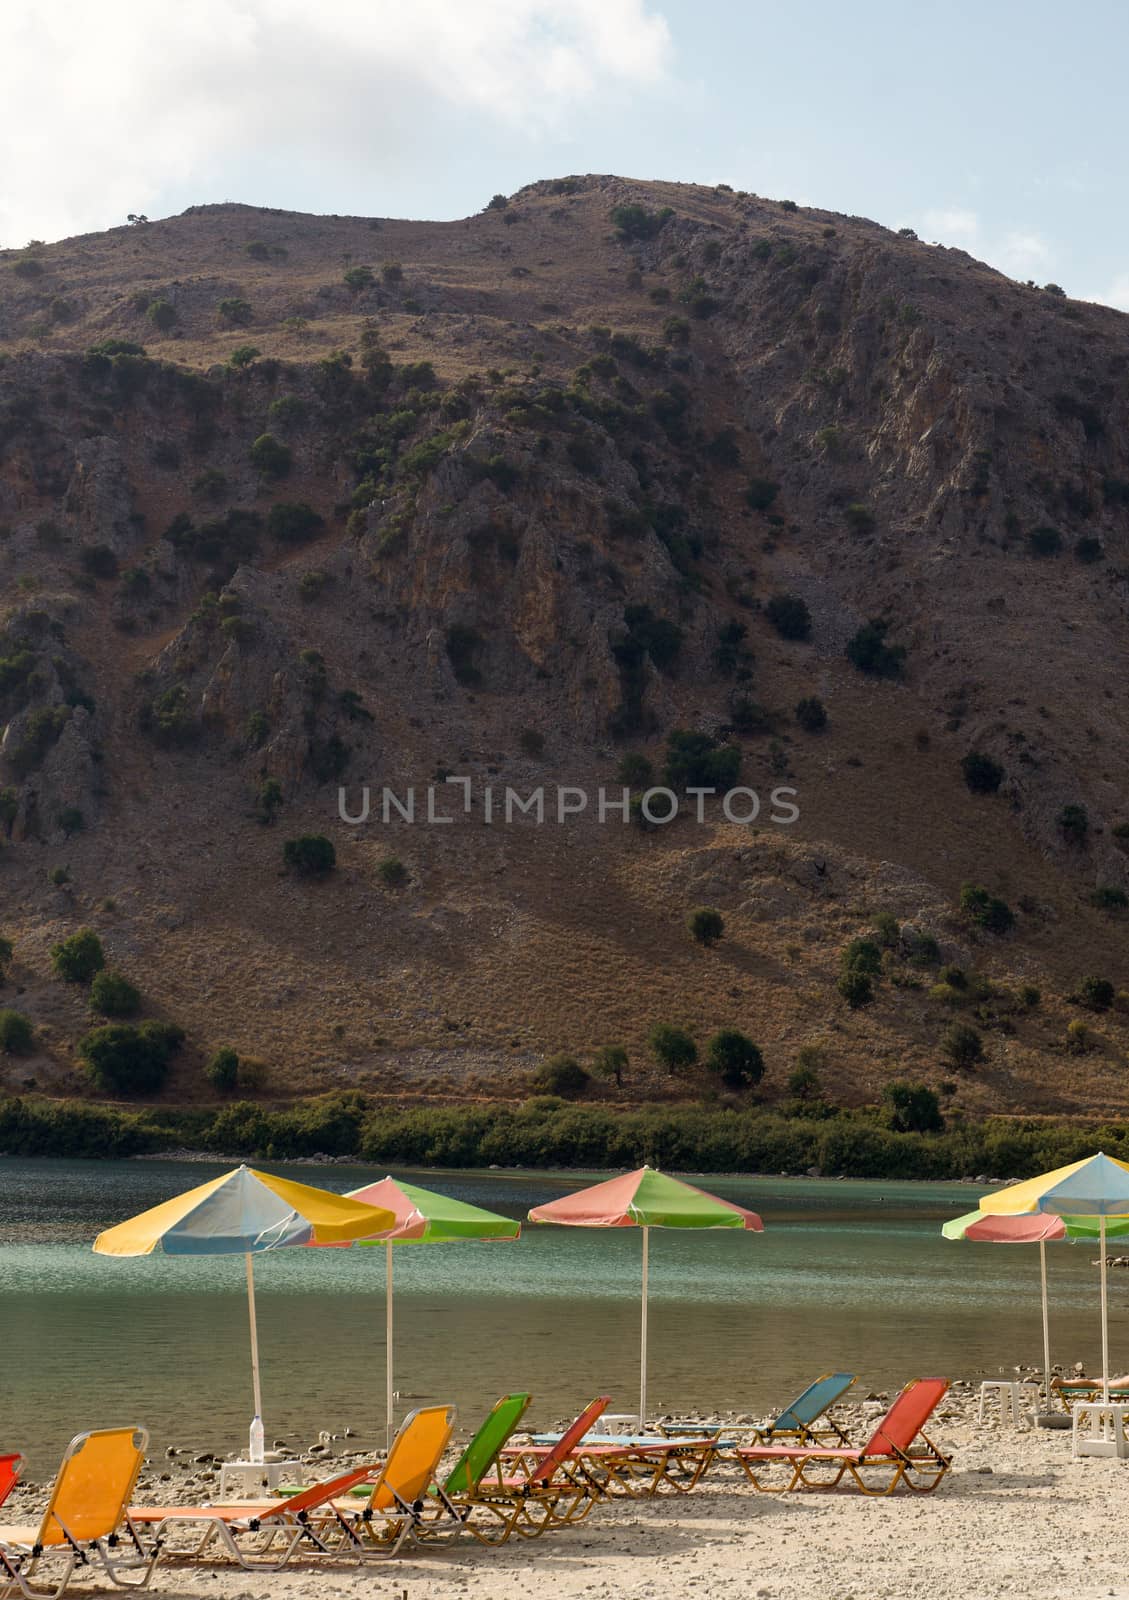 The only fresh water lake in Crete - Lake Kournas.